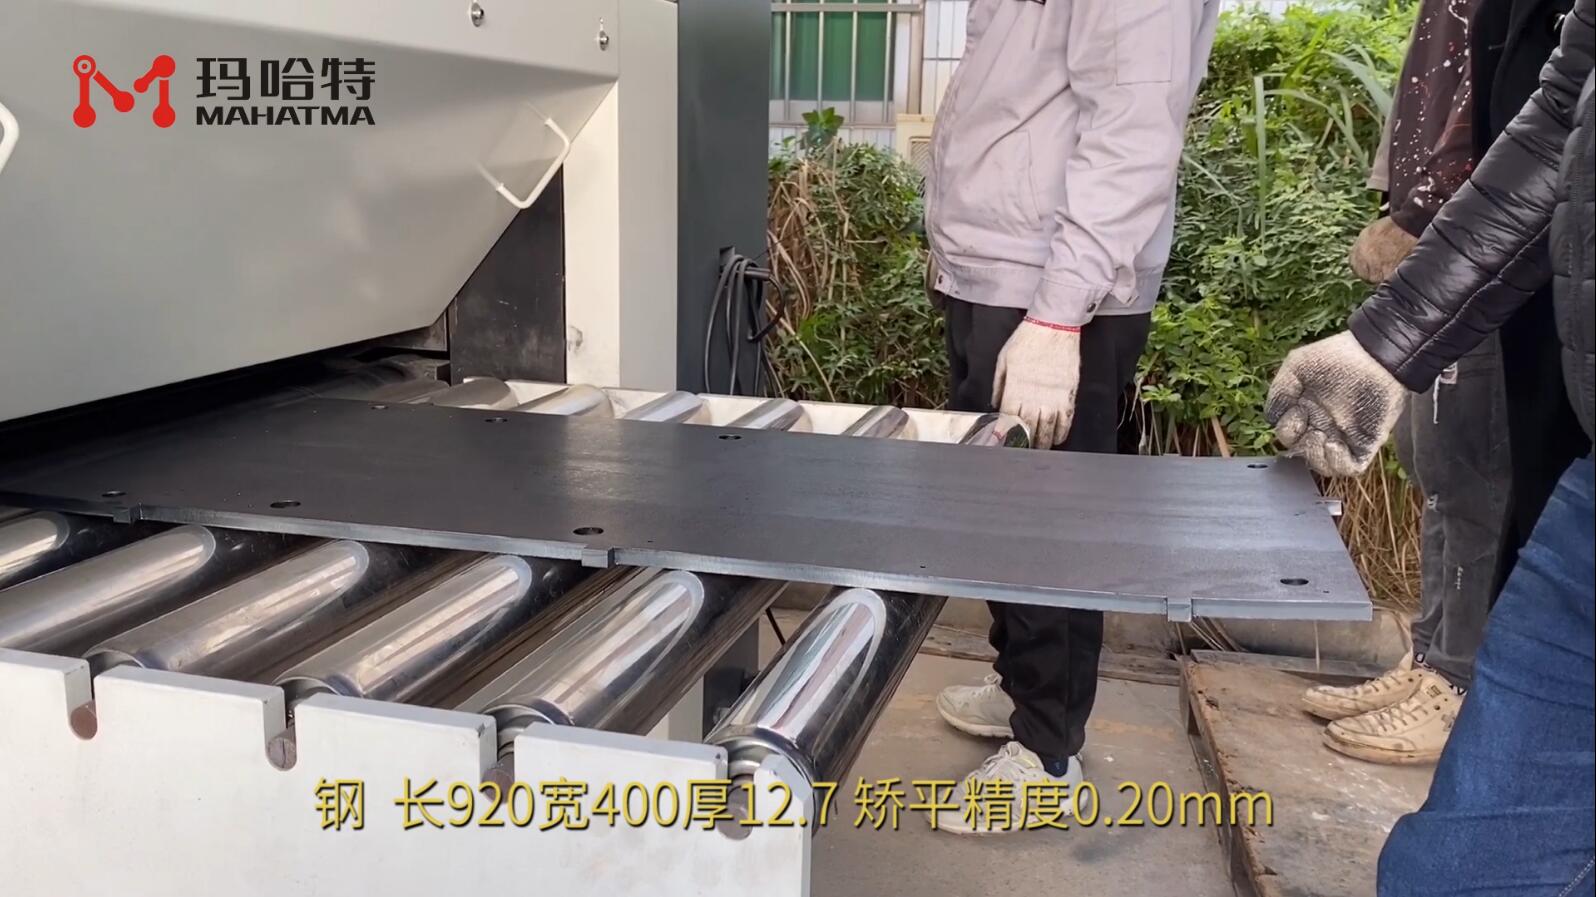 钢 MHT120-1000 长方形 长920宽400厚12.7mm